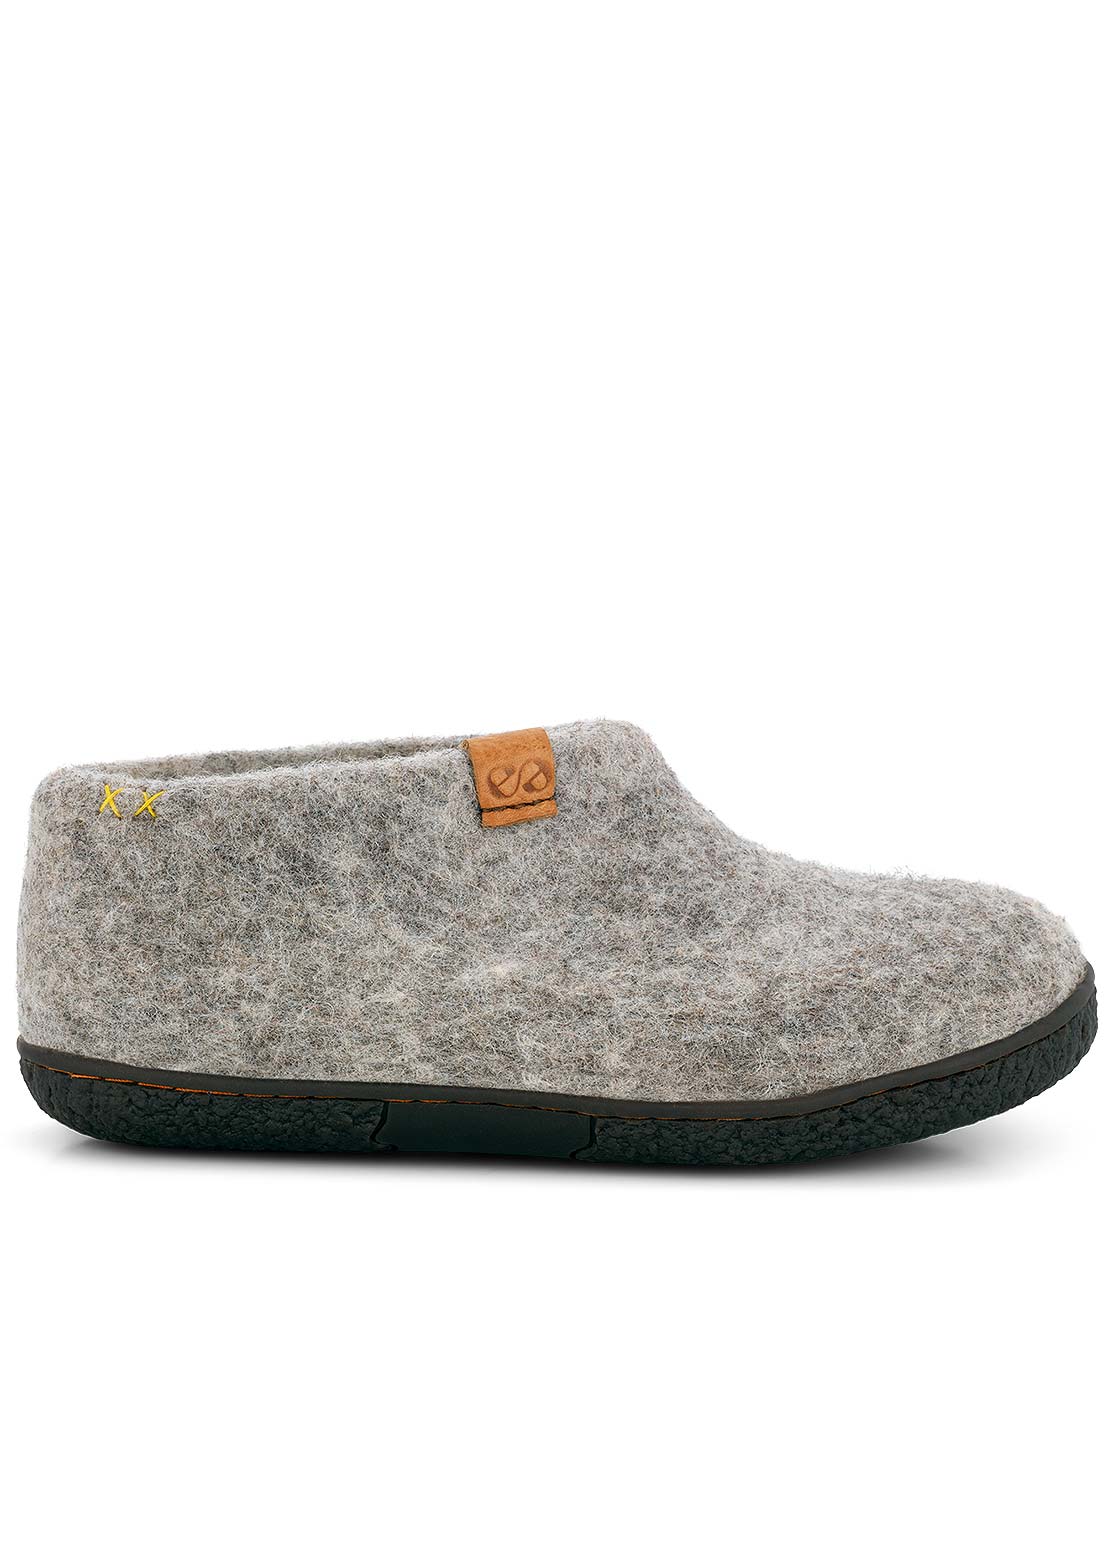 Wool by Green Unisex Pumori Rubber Sole Open Heel Slippers Light grey